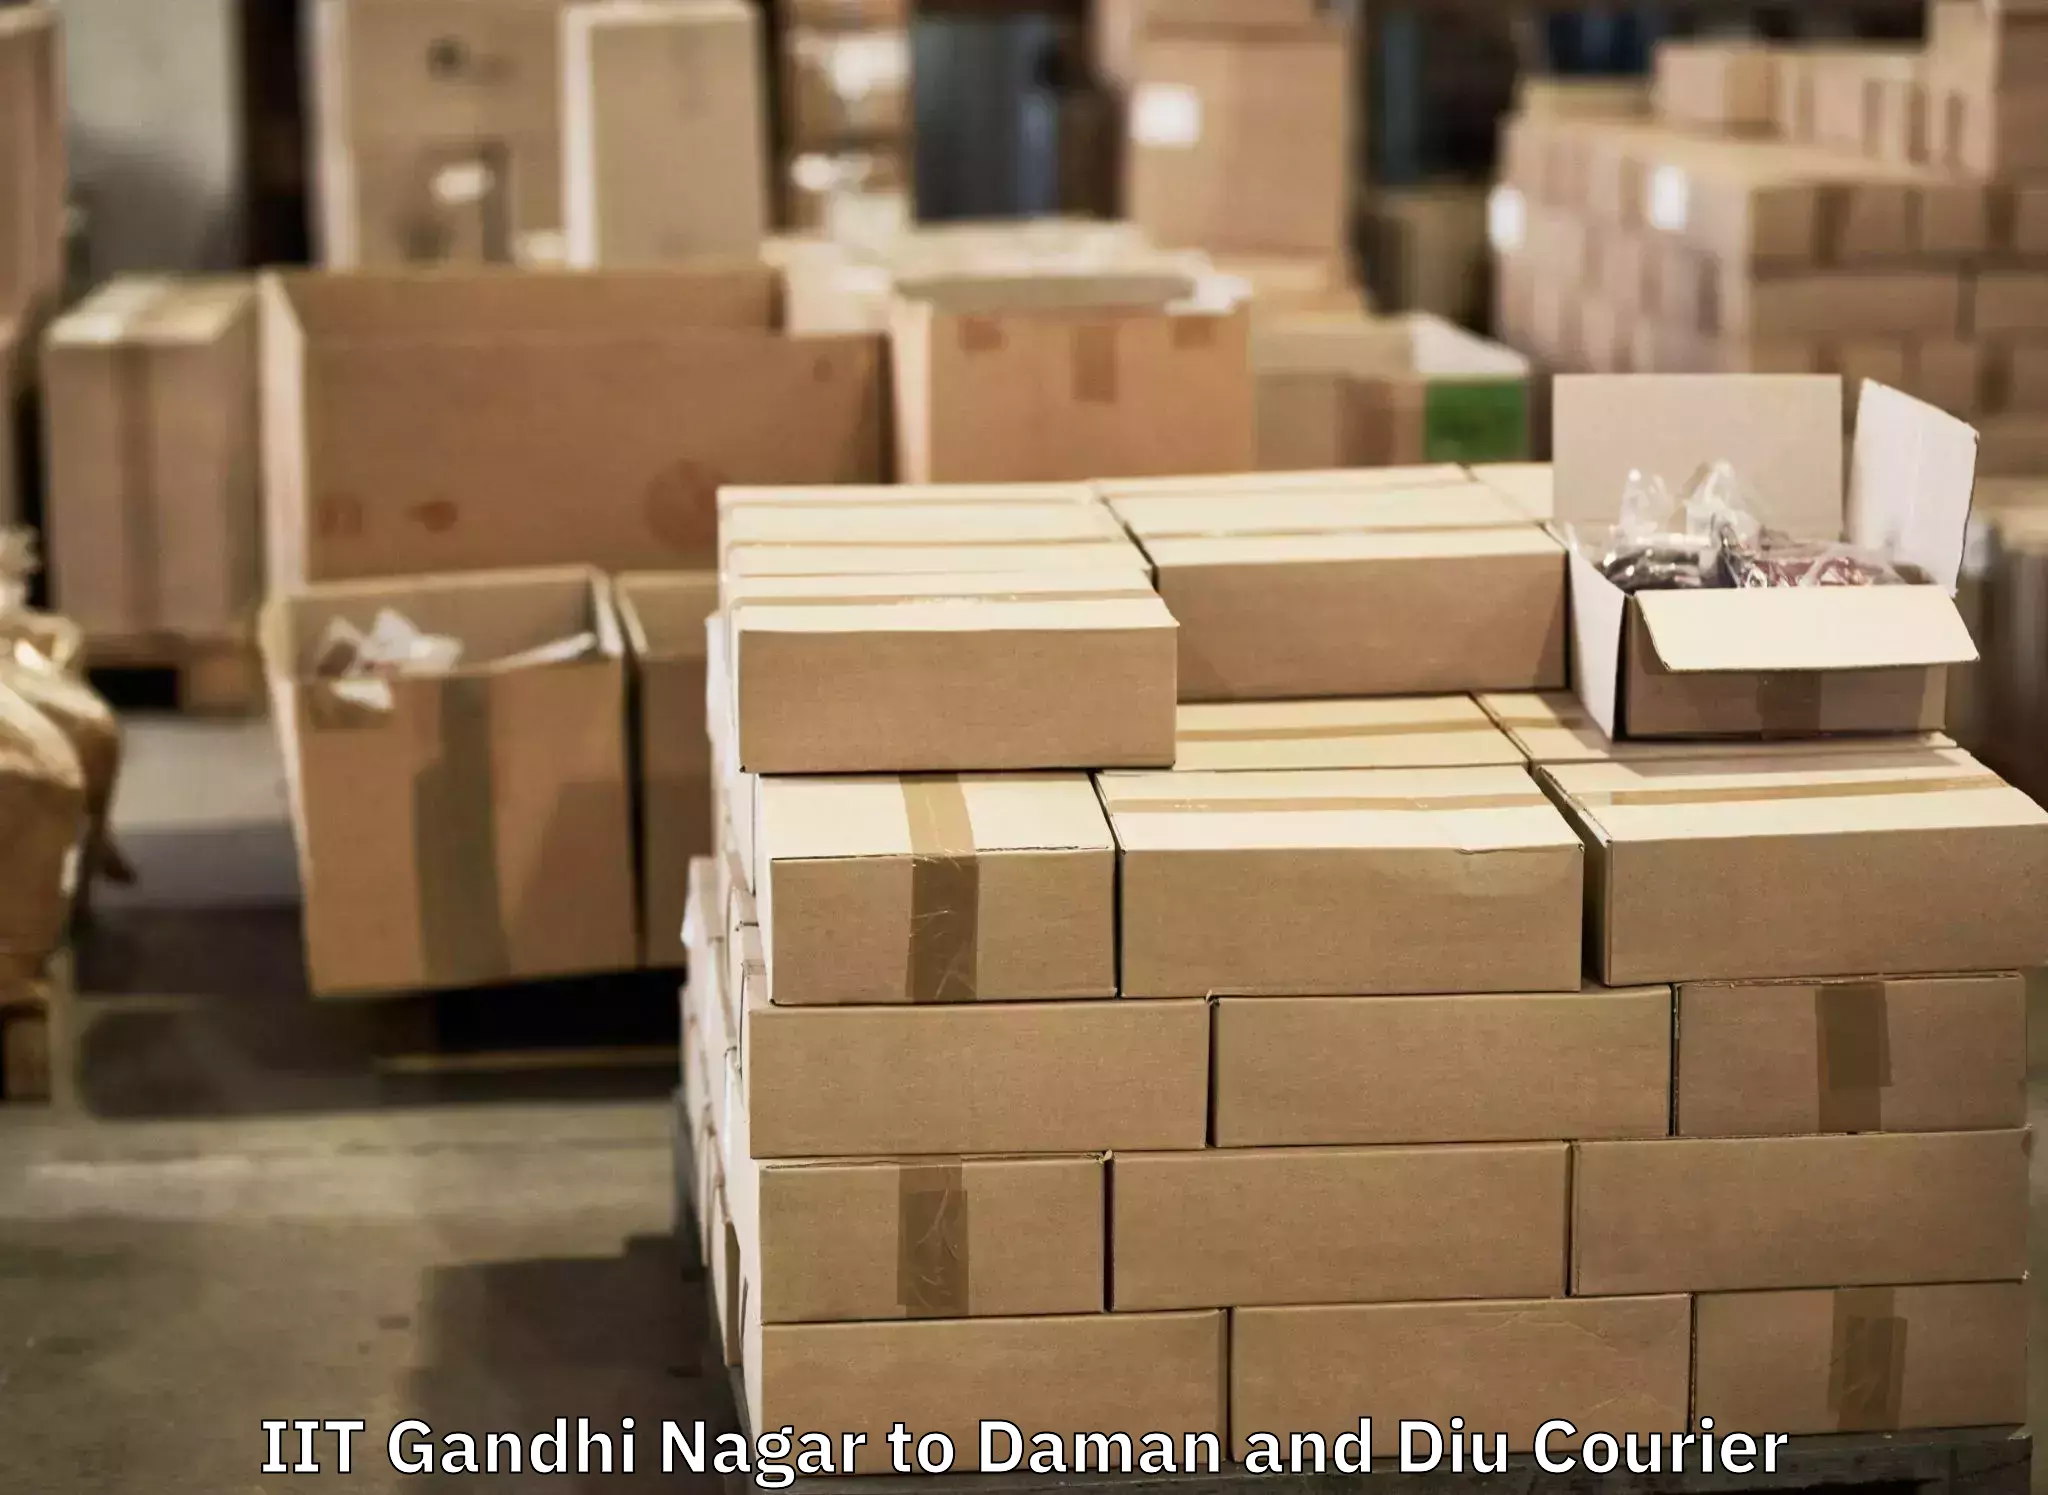 Luggage shipment processing IIT Gandhi Nagar to Daman and Diu